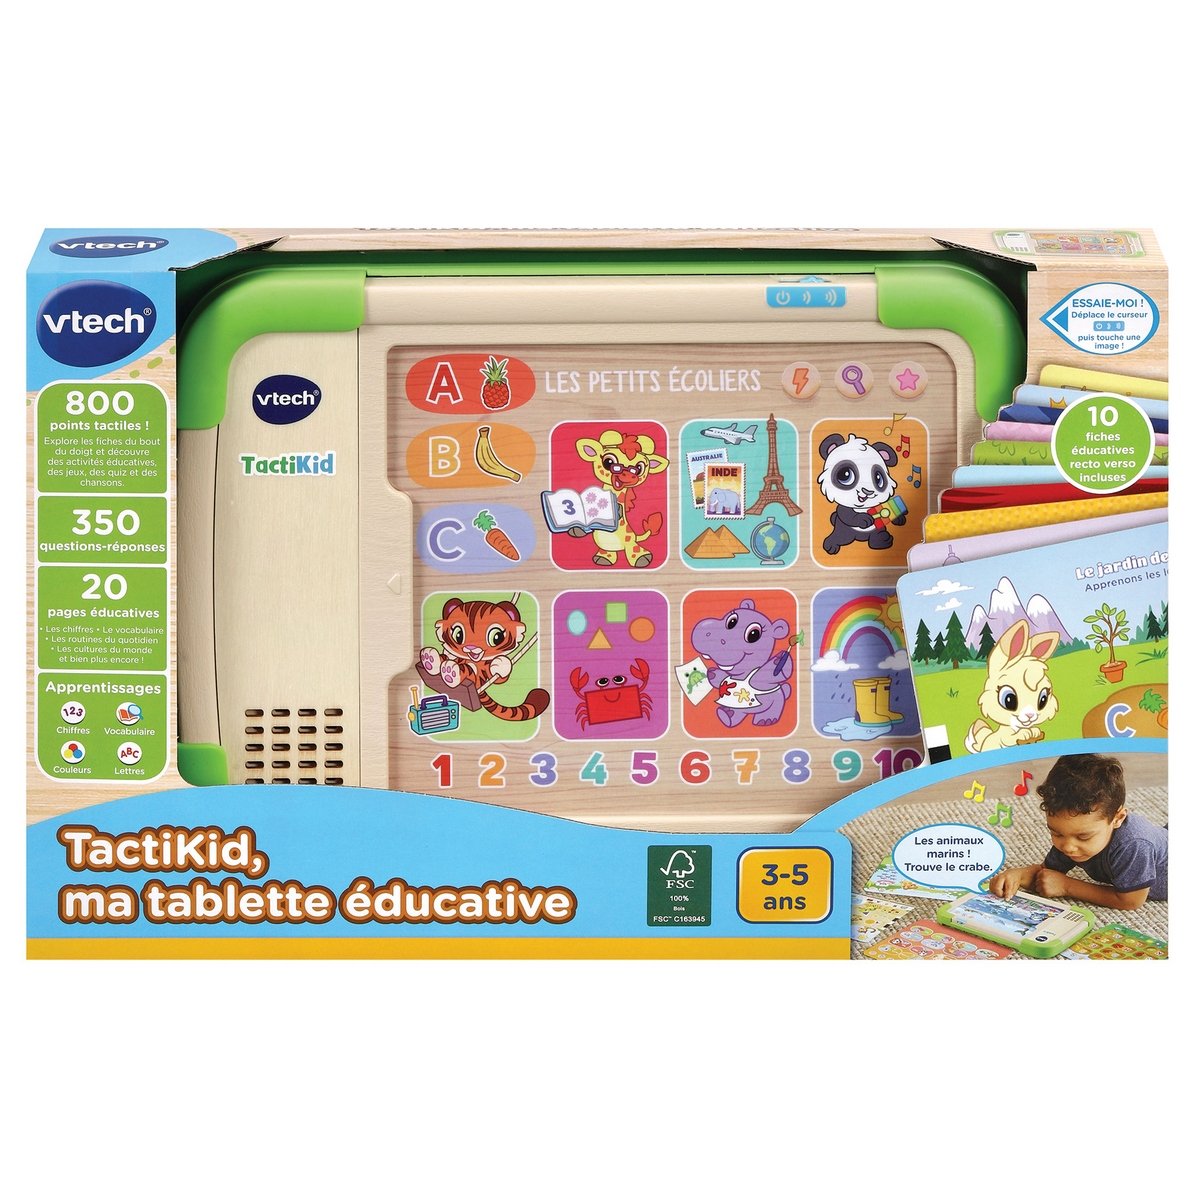 Tablette educative - Jeux et jouets - mondedegamer